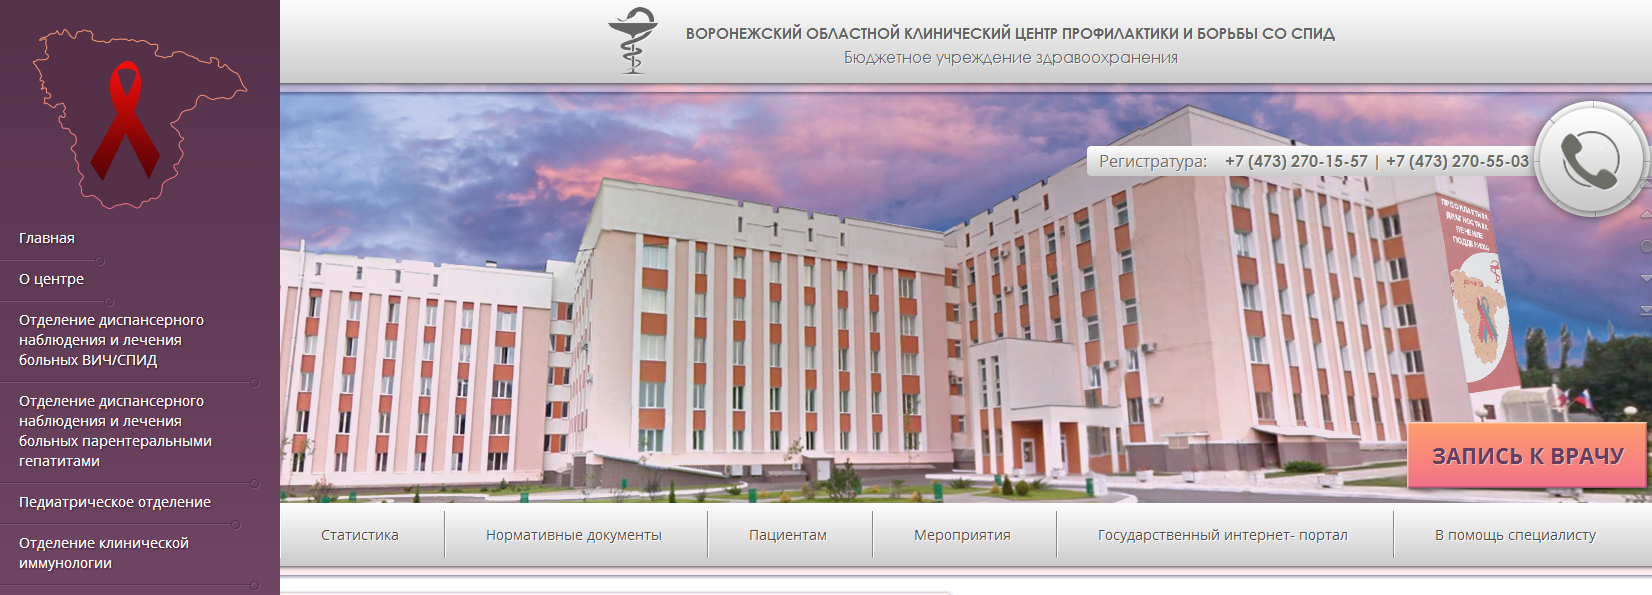 Сайт центра спид красноярск